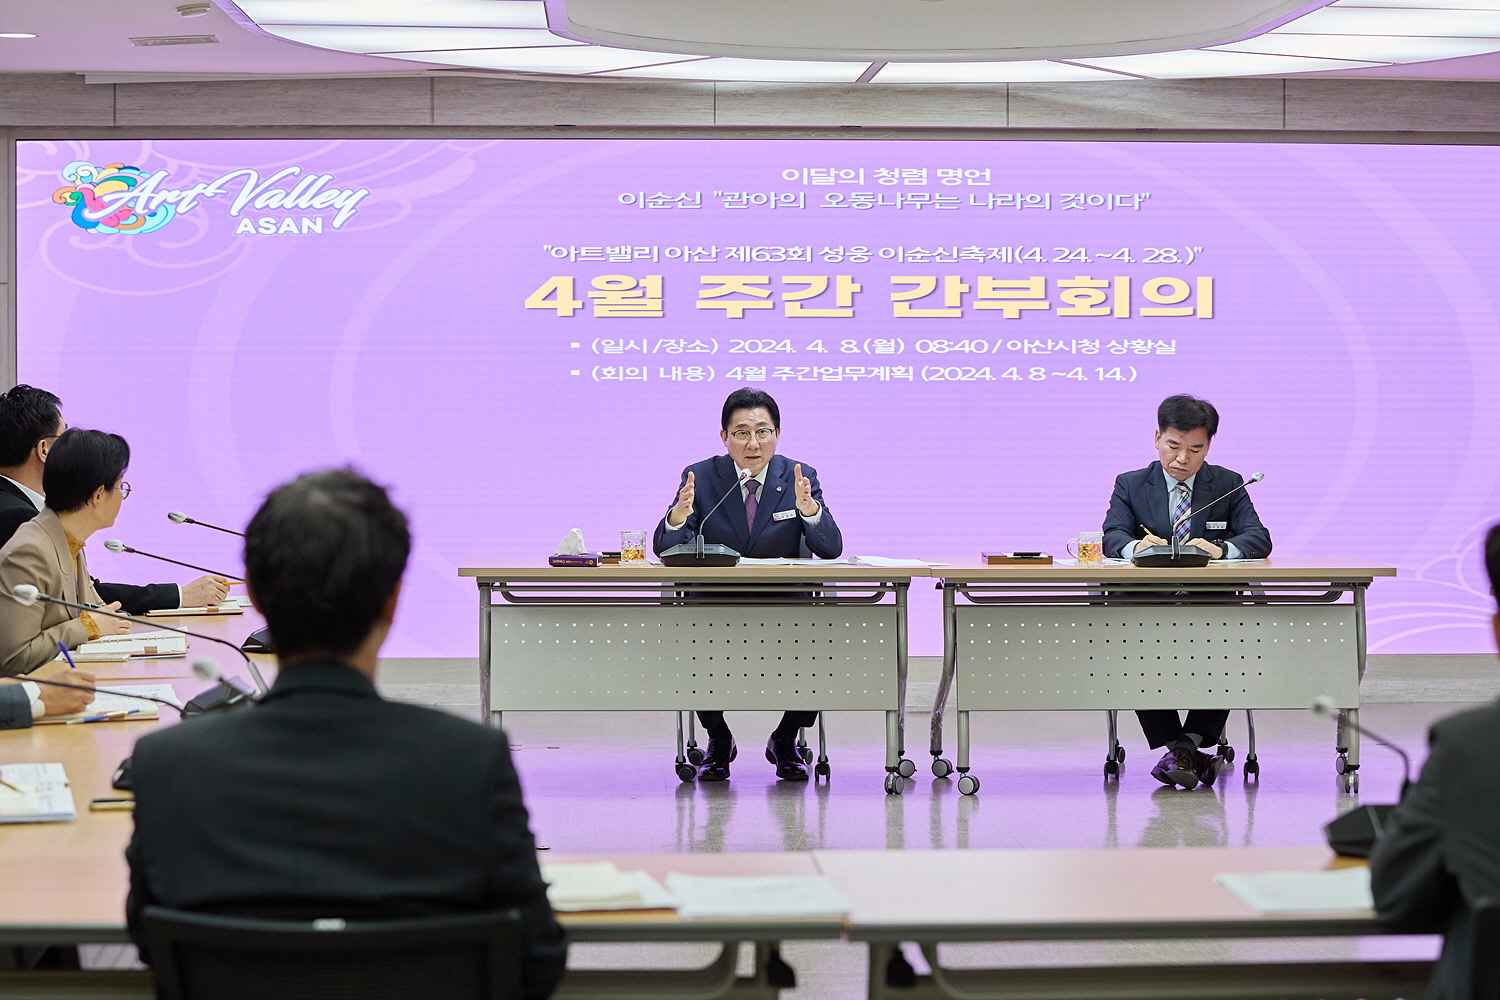 박경귀 아산시장 “국 단위 과부하 해소” 조직 개편 예고 관련사진